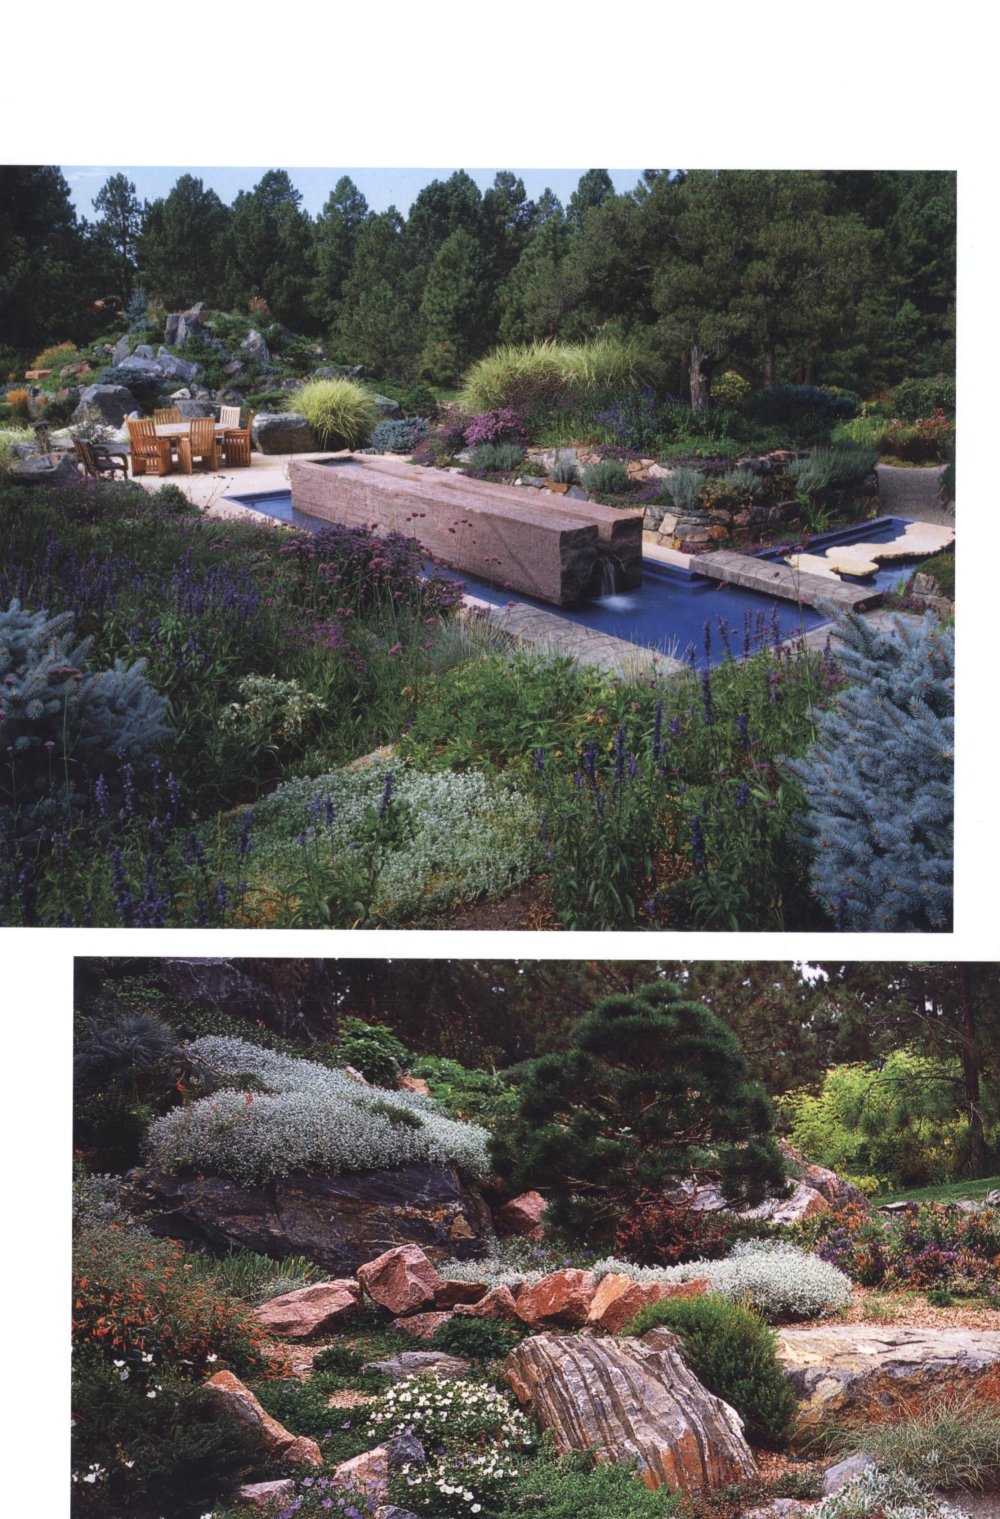 别墅庭园规划与设计Villa Garden Plan & Design_049.jpg